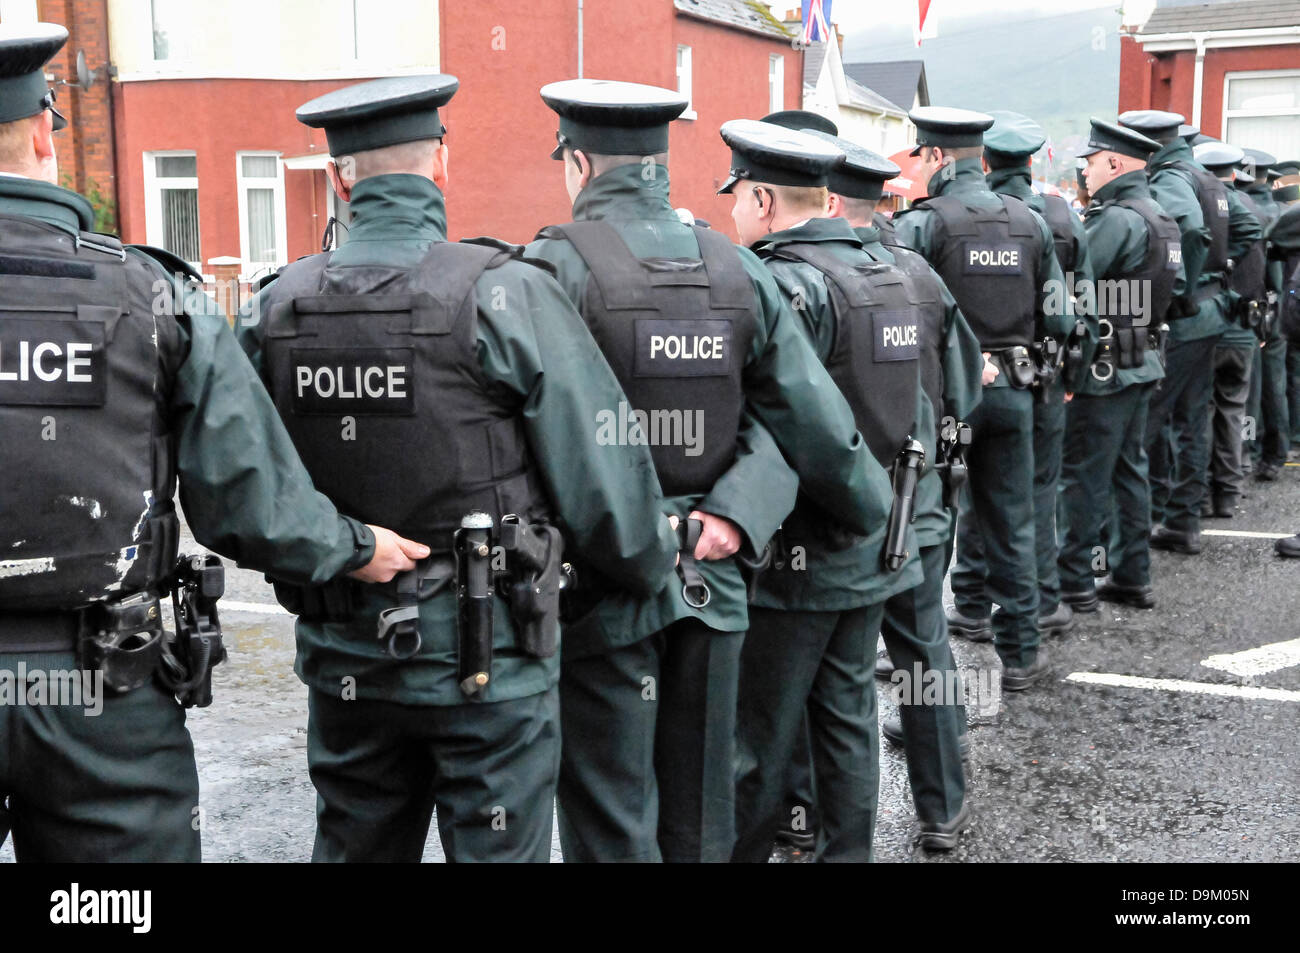 Uniformierte Polizei Polizisten Warnschutz Jacke tragen bilden eine Linie über eine Straße, eine Menge von Verfahren zu stoppen Stockfoto